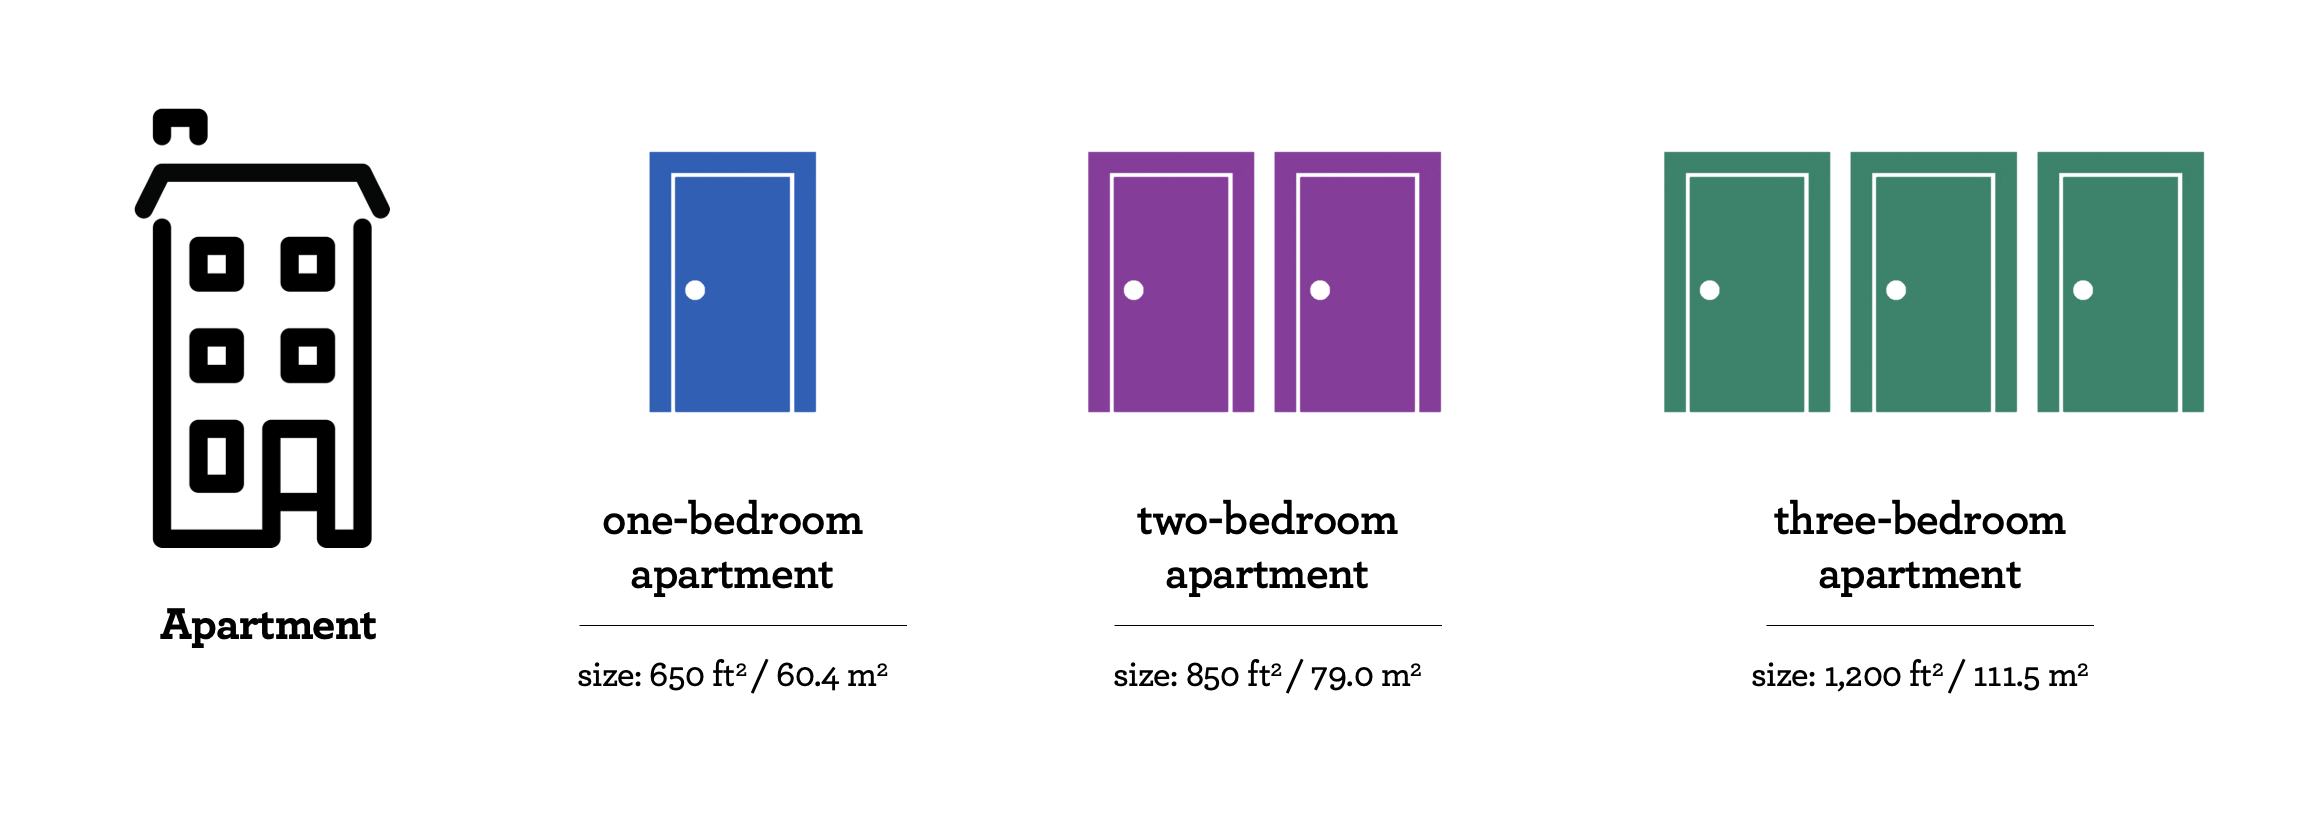 visual - apartment sizes